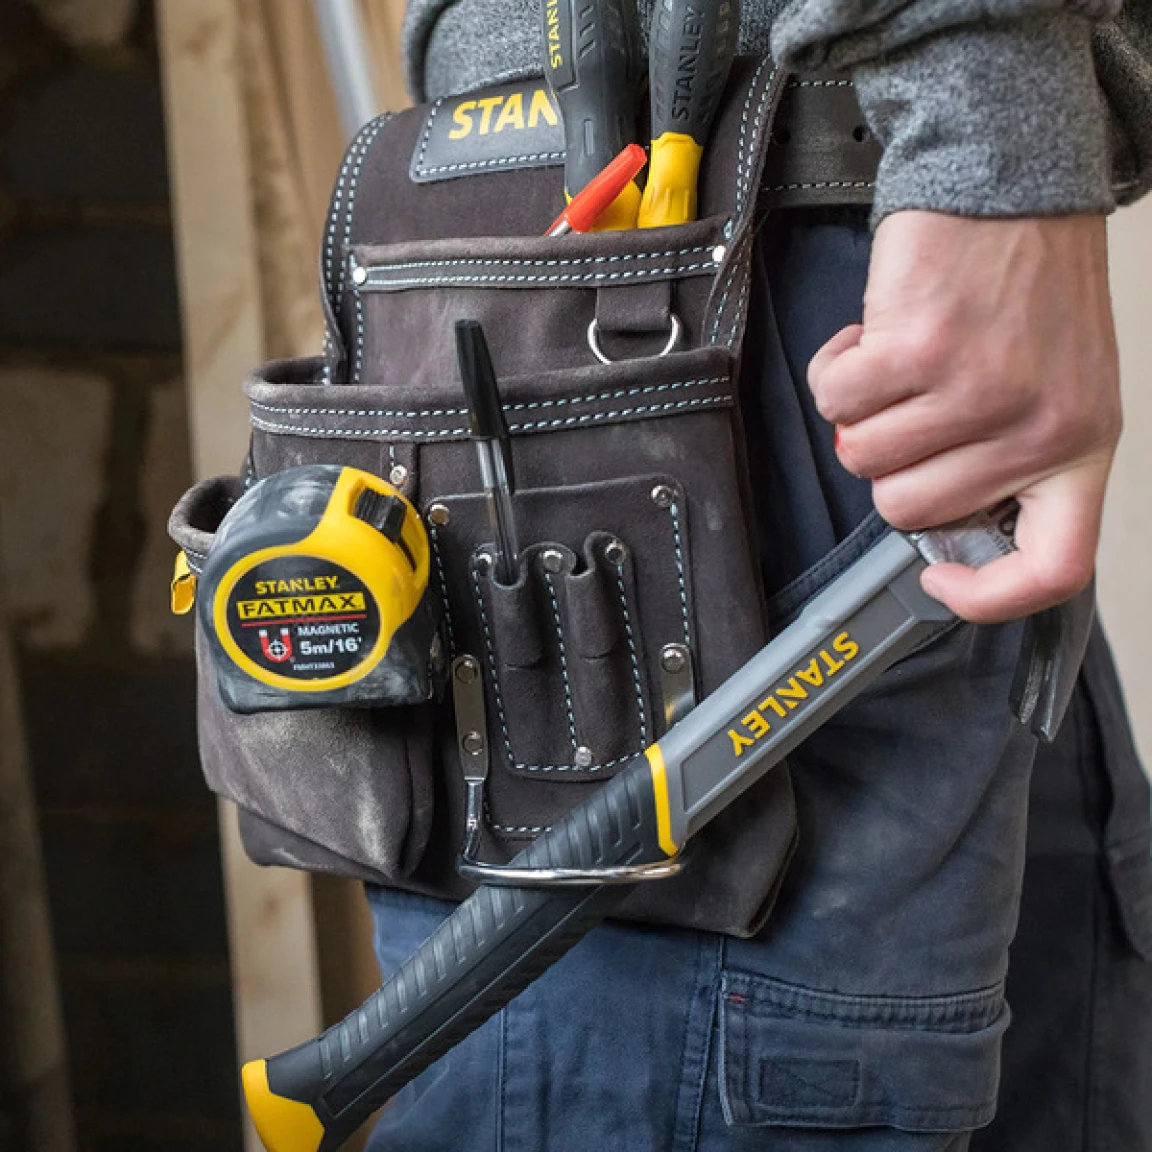 Porte-outils de ceinture en cuir, 3 poches et porte-marteau, 28 cm